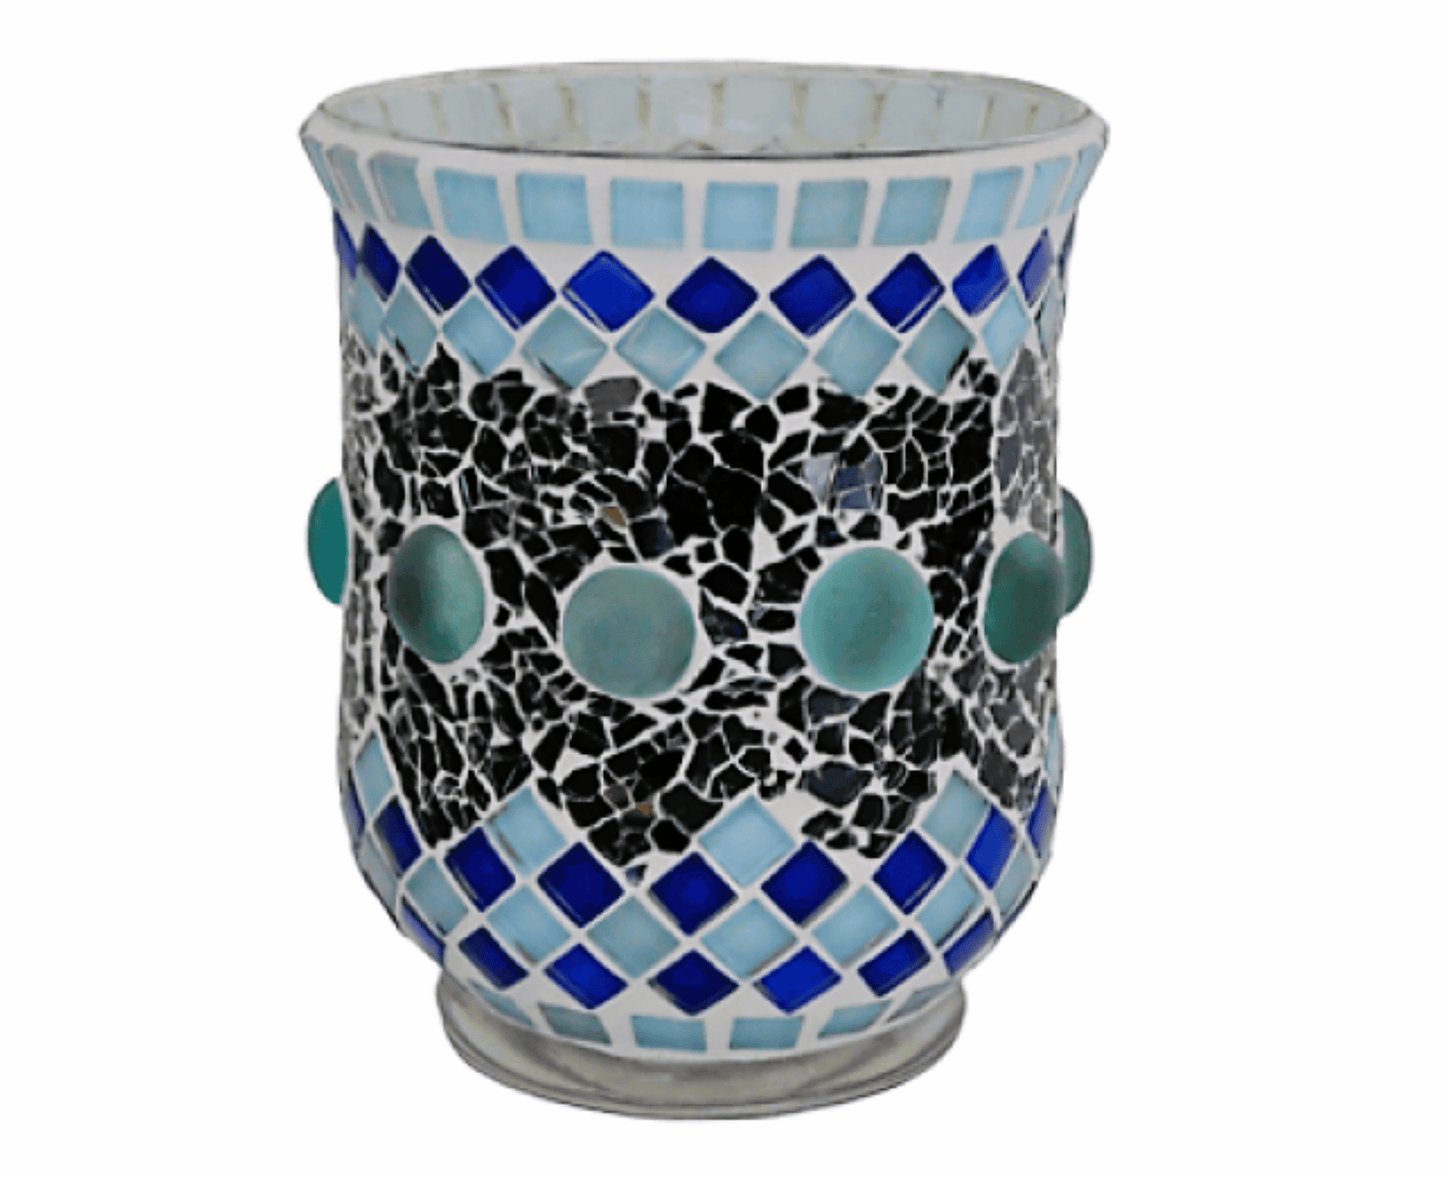 Mosaik Windlicht blau 14 cm hoch - handgemacht - Mosaikkasten aus alt mach neu blau